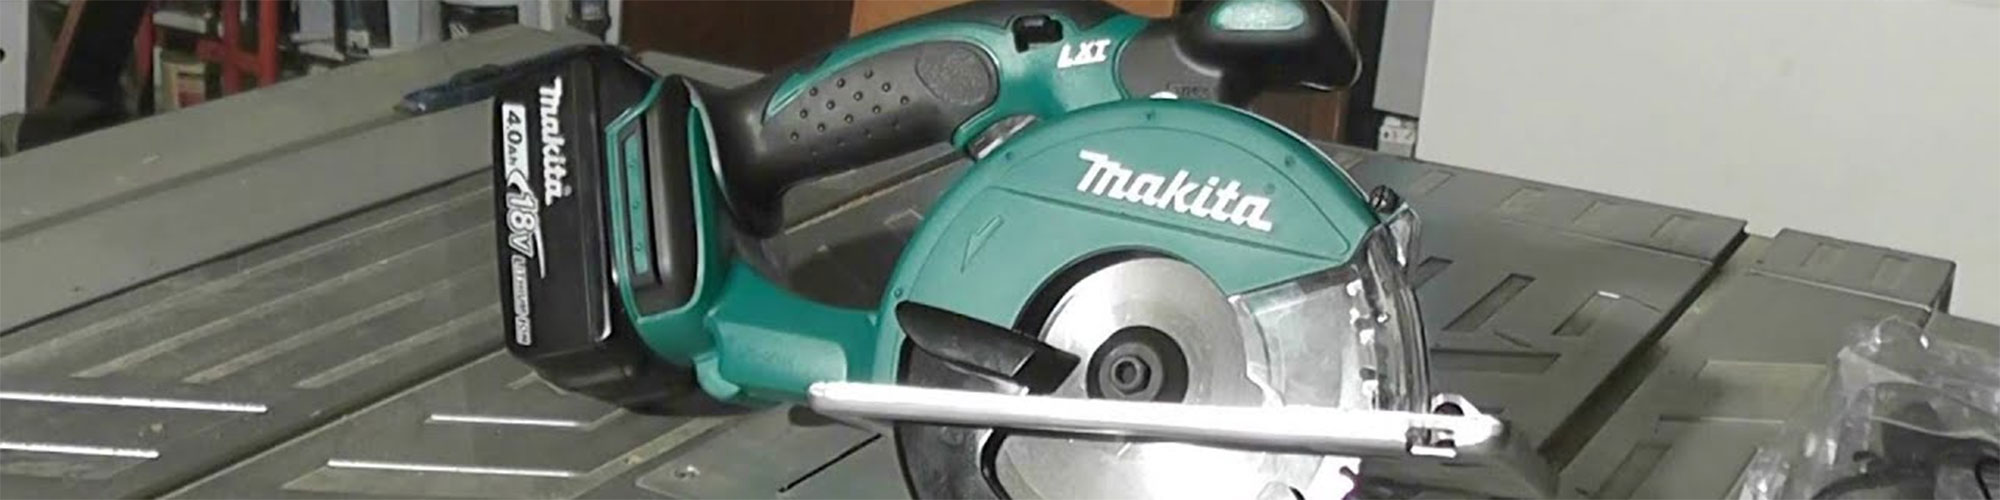 Makita DCS551 Cutting Saw - Toolstop